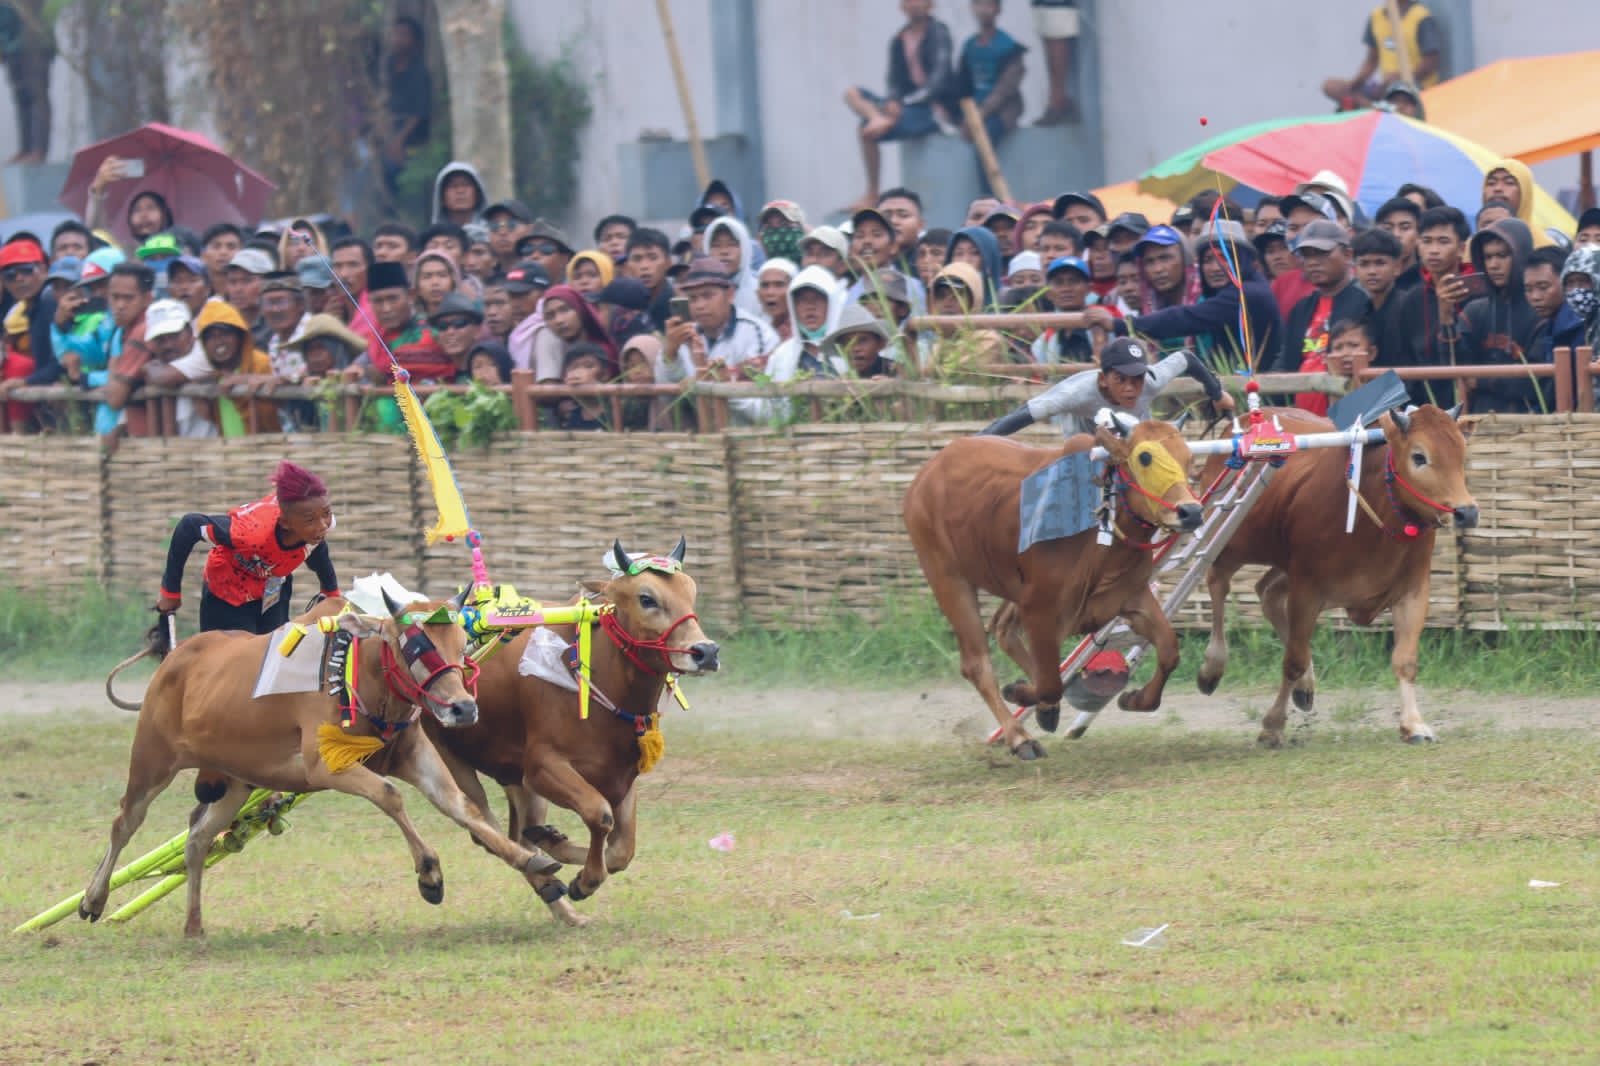 Grand Final Karapan Sapi Tradisional di Madura, Sekdaprov Jatim: Ini Budaya Eksotik